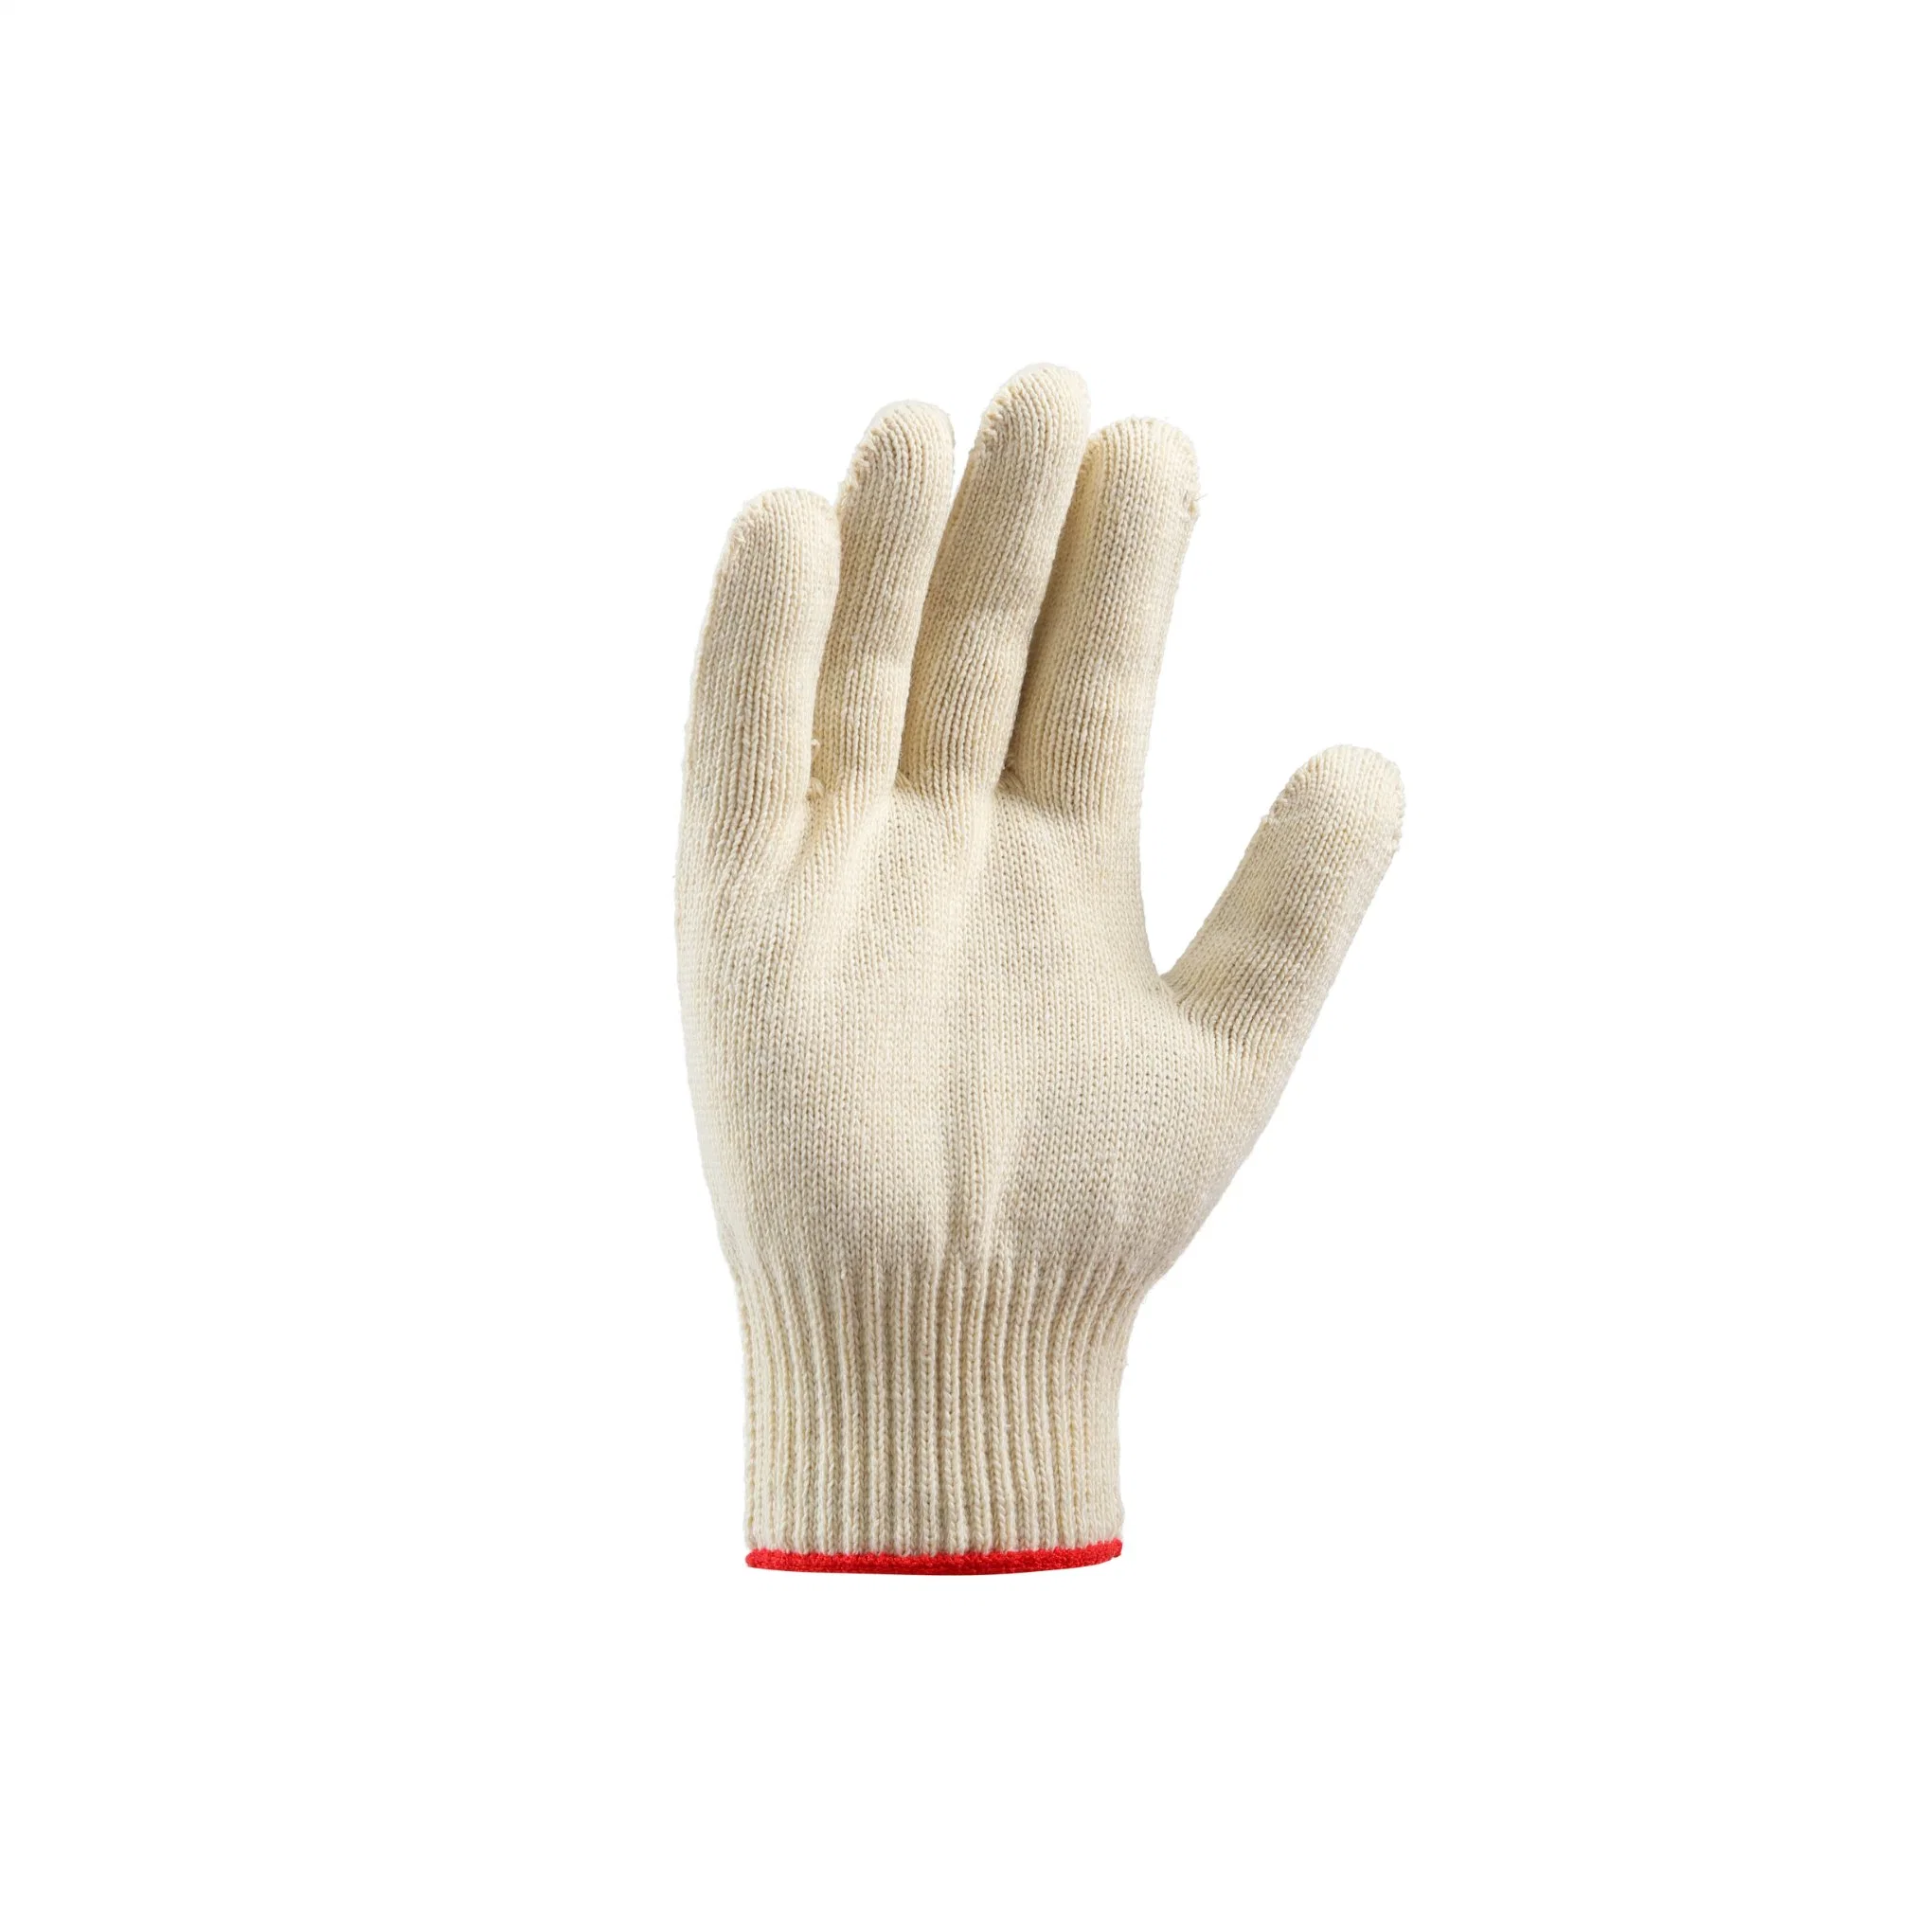 Guantes de seguridad de algodón blanco resistentes al desgaste de protección de manos